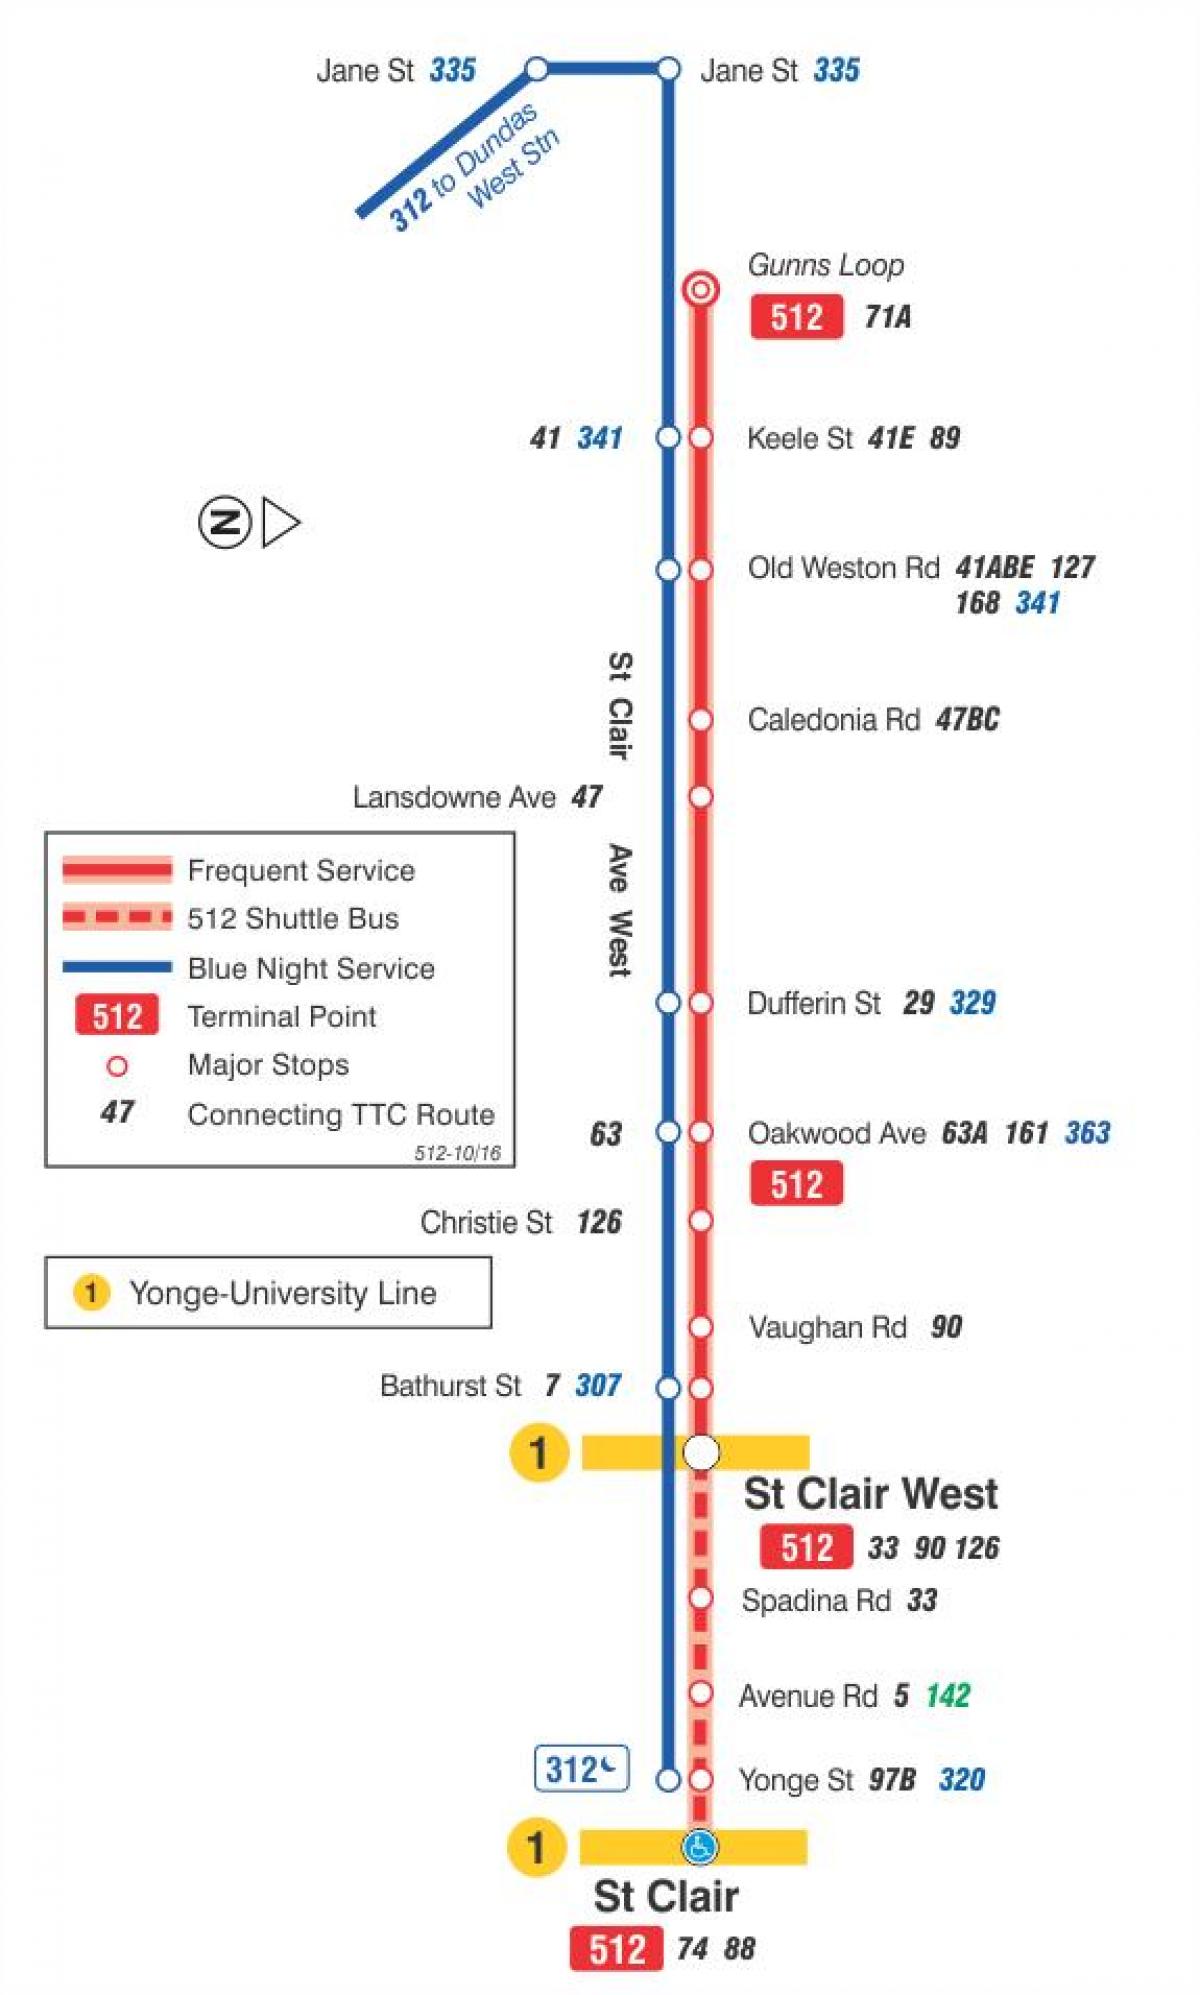 რუკა streetcar line 512 St. Clair